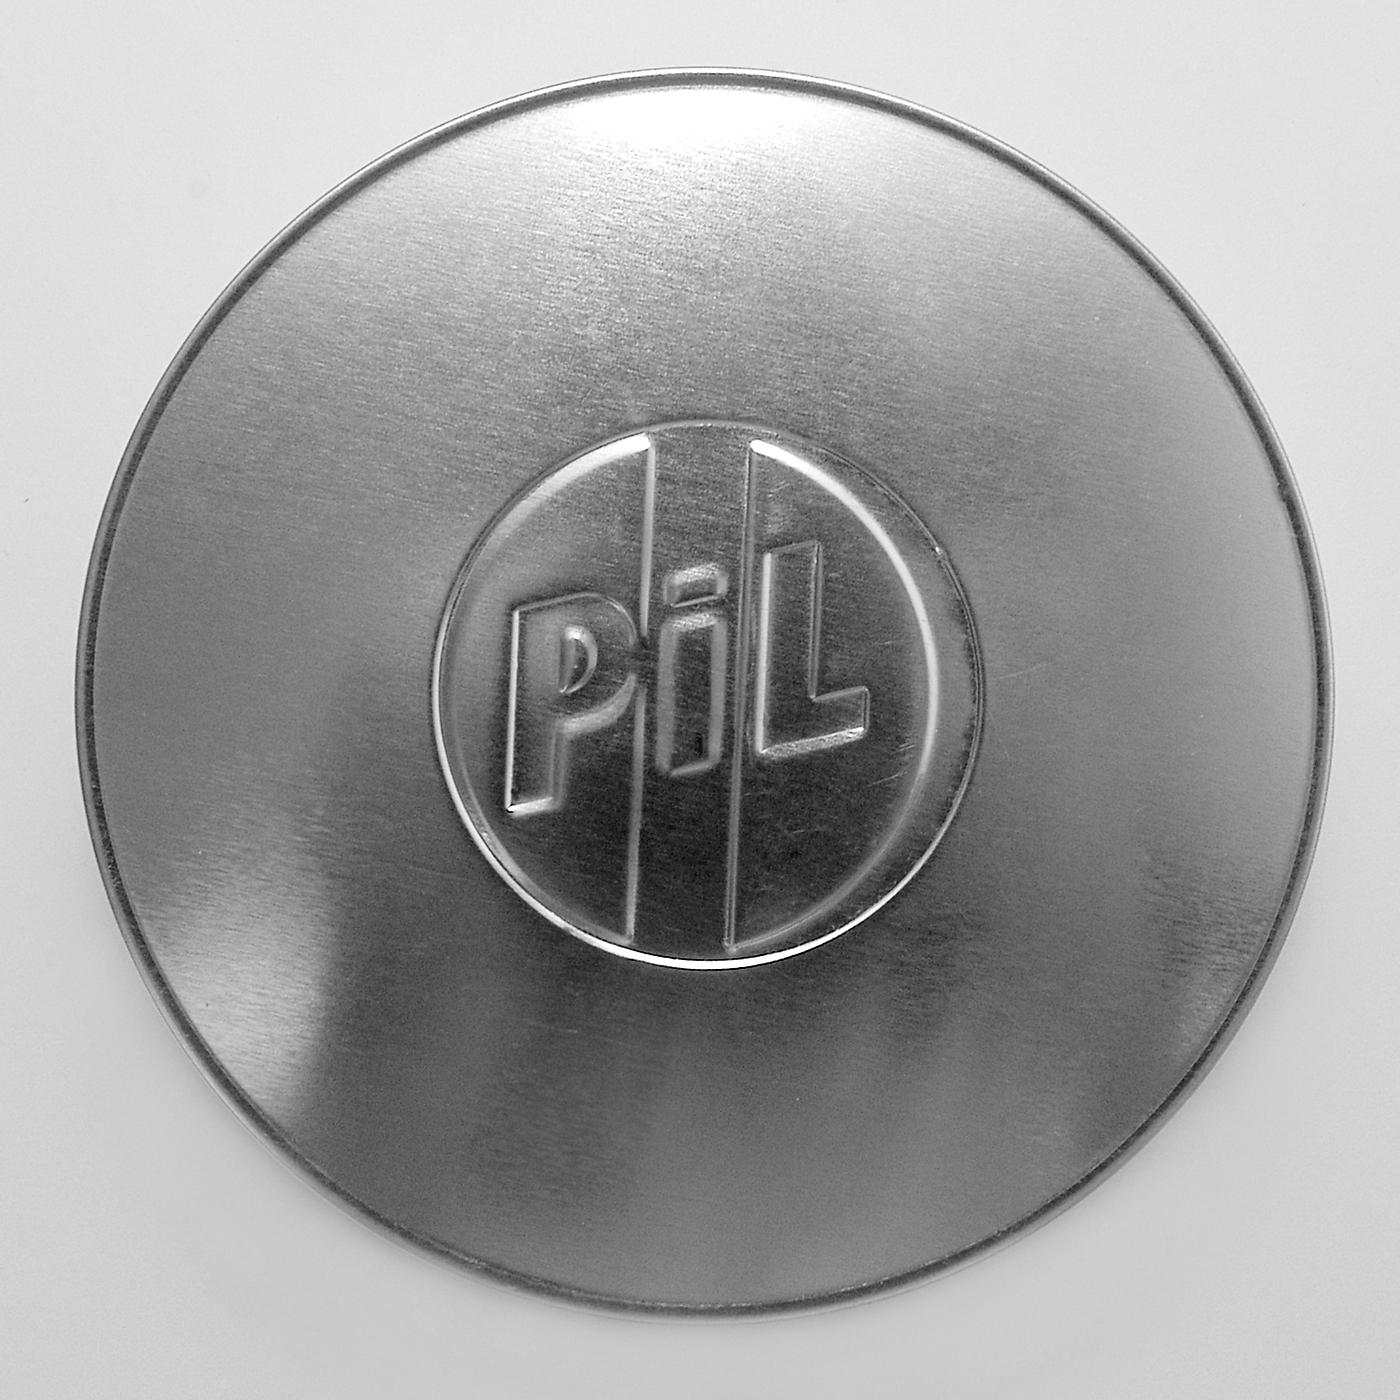 Public image ltd. Public image Ltd 1979 года «Metal Box. Public image Ltd Metal Box. Pil Metal Box. Public image Limited Metal Box винил.